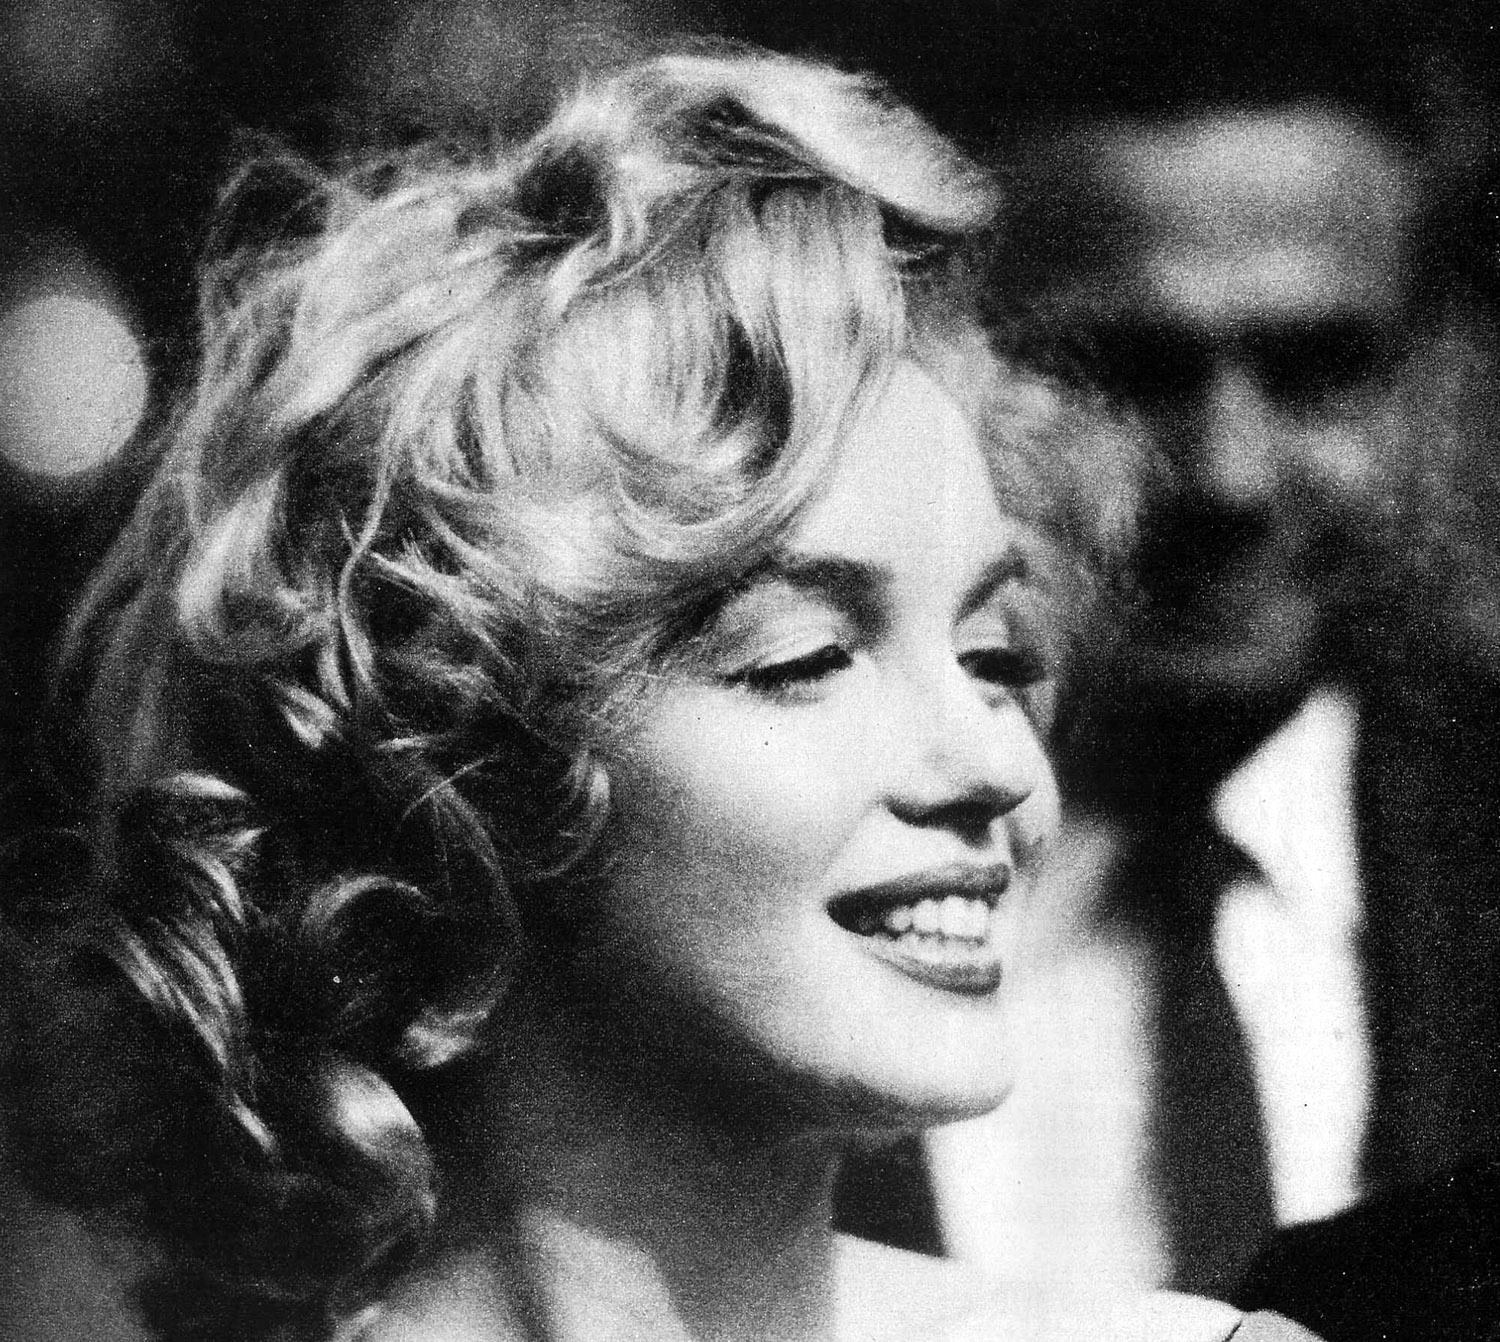 Marilyn Monroe - Images Gallery